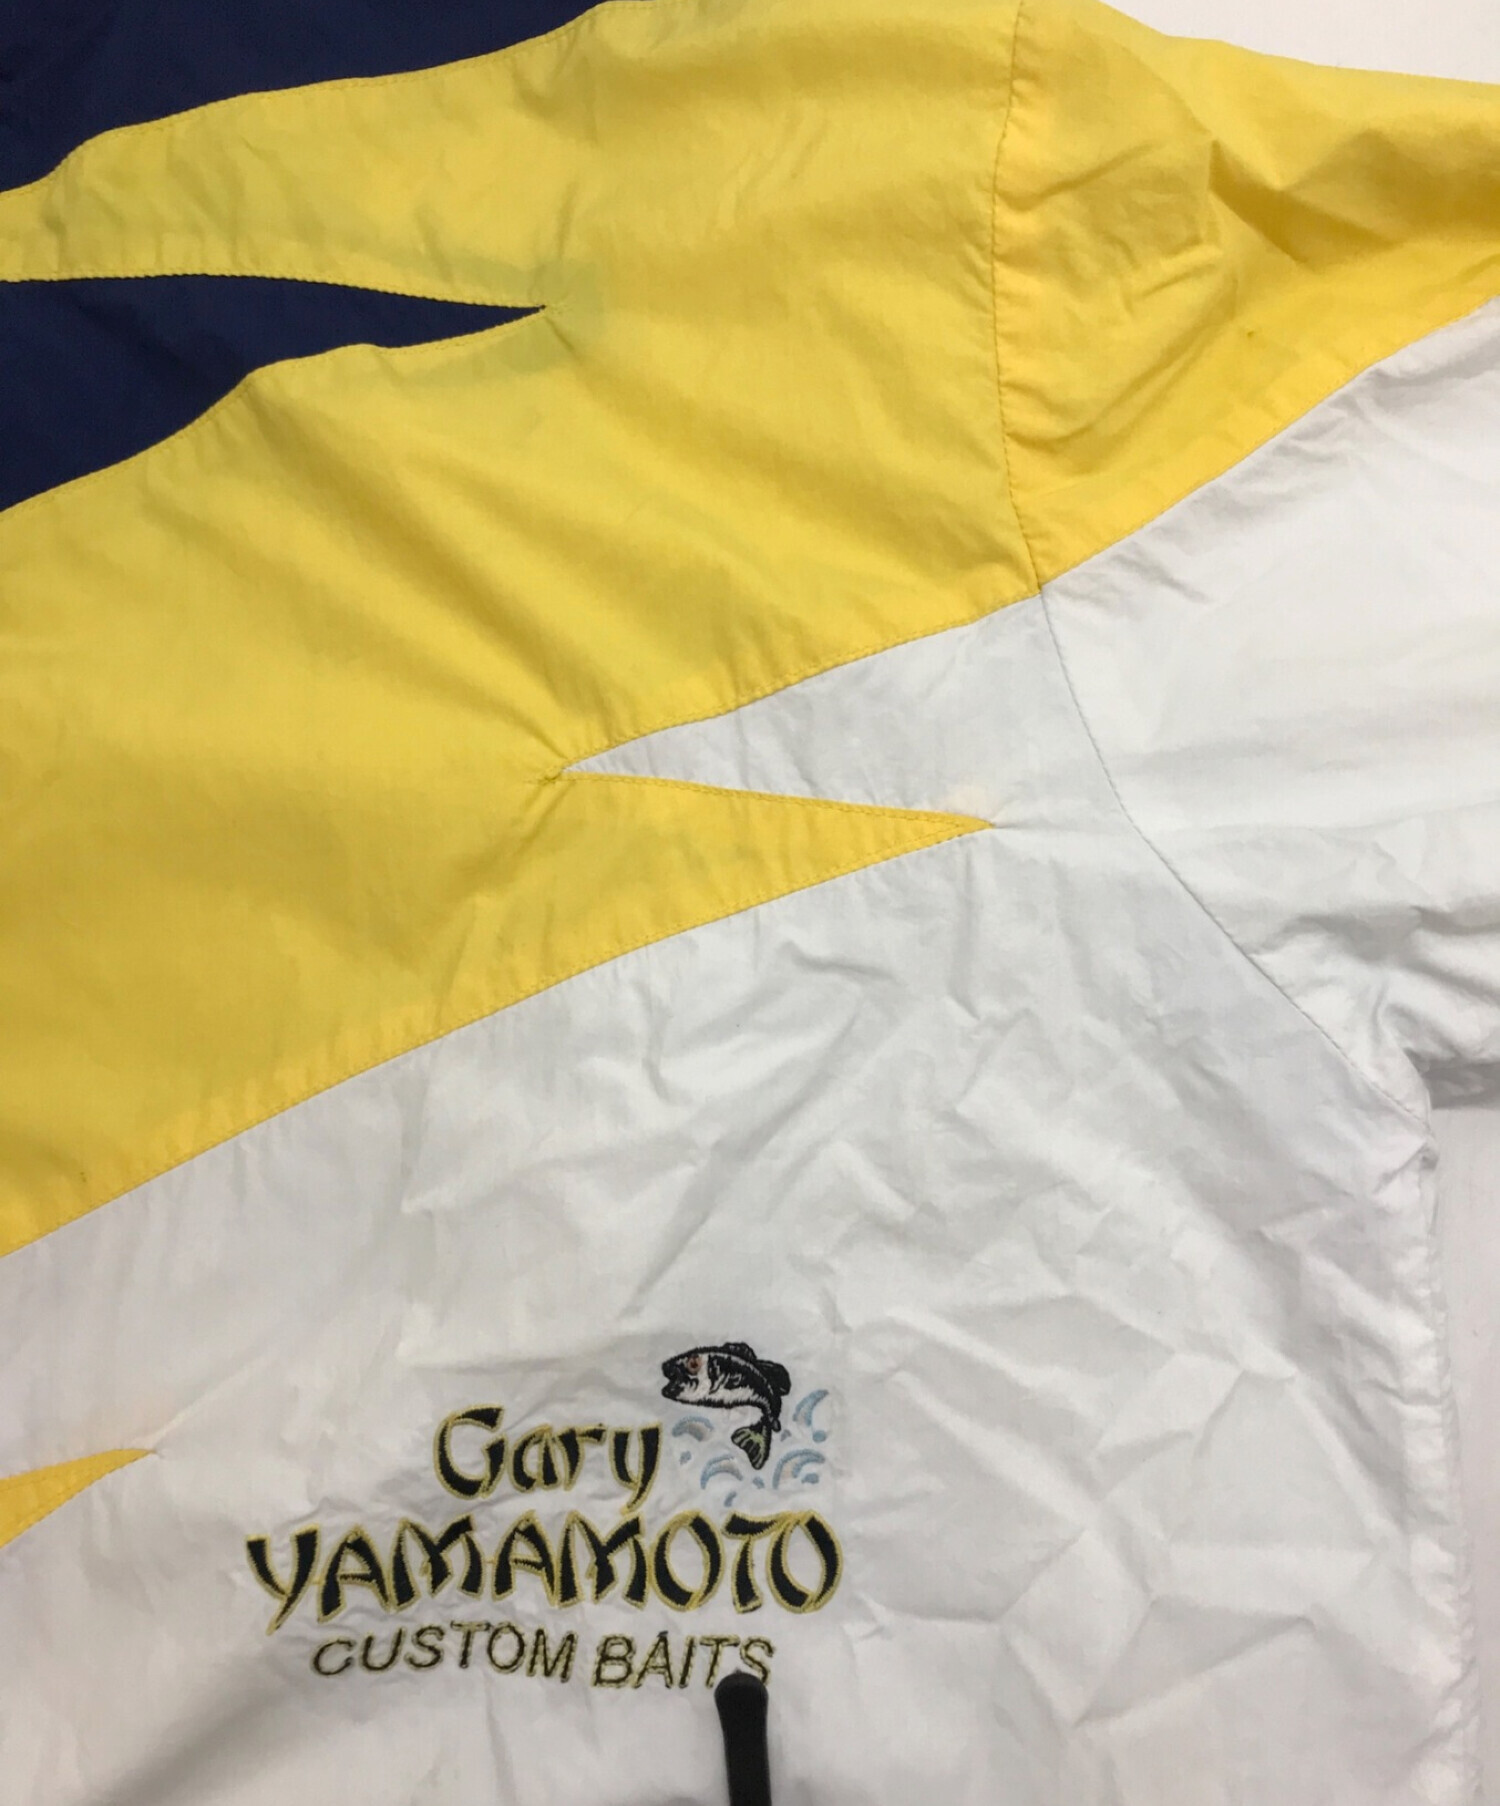 CHALLENGER (チャレンジャー) GARY YAMAMOTO (ゲーリーヤマモト) コラボナイロンジャケット ホワイト×ブルー サイズ:M